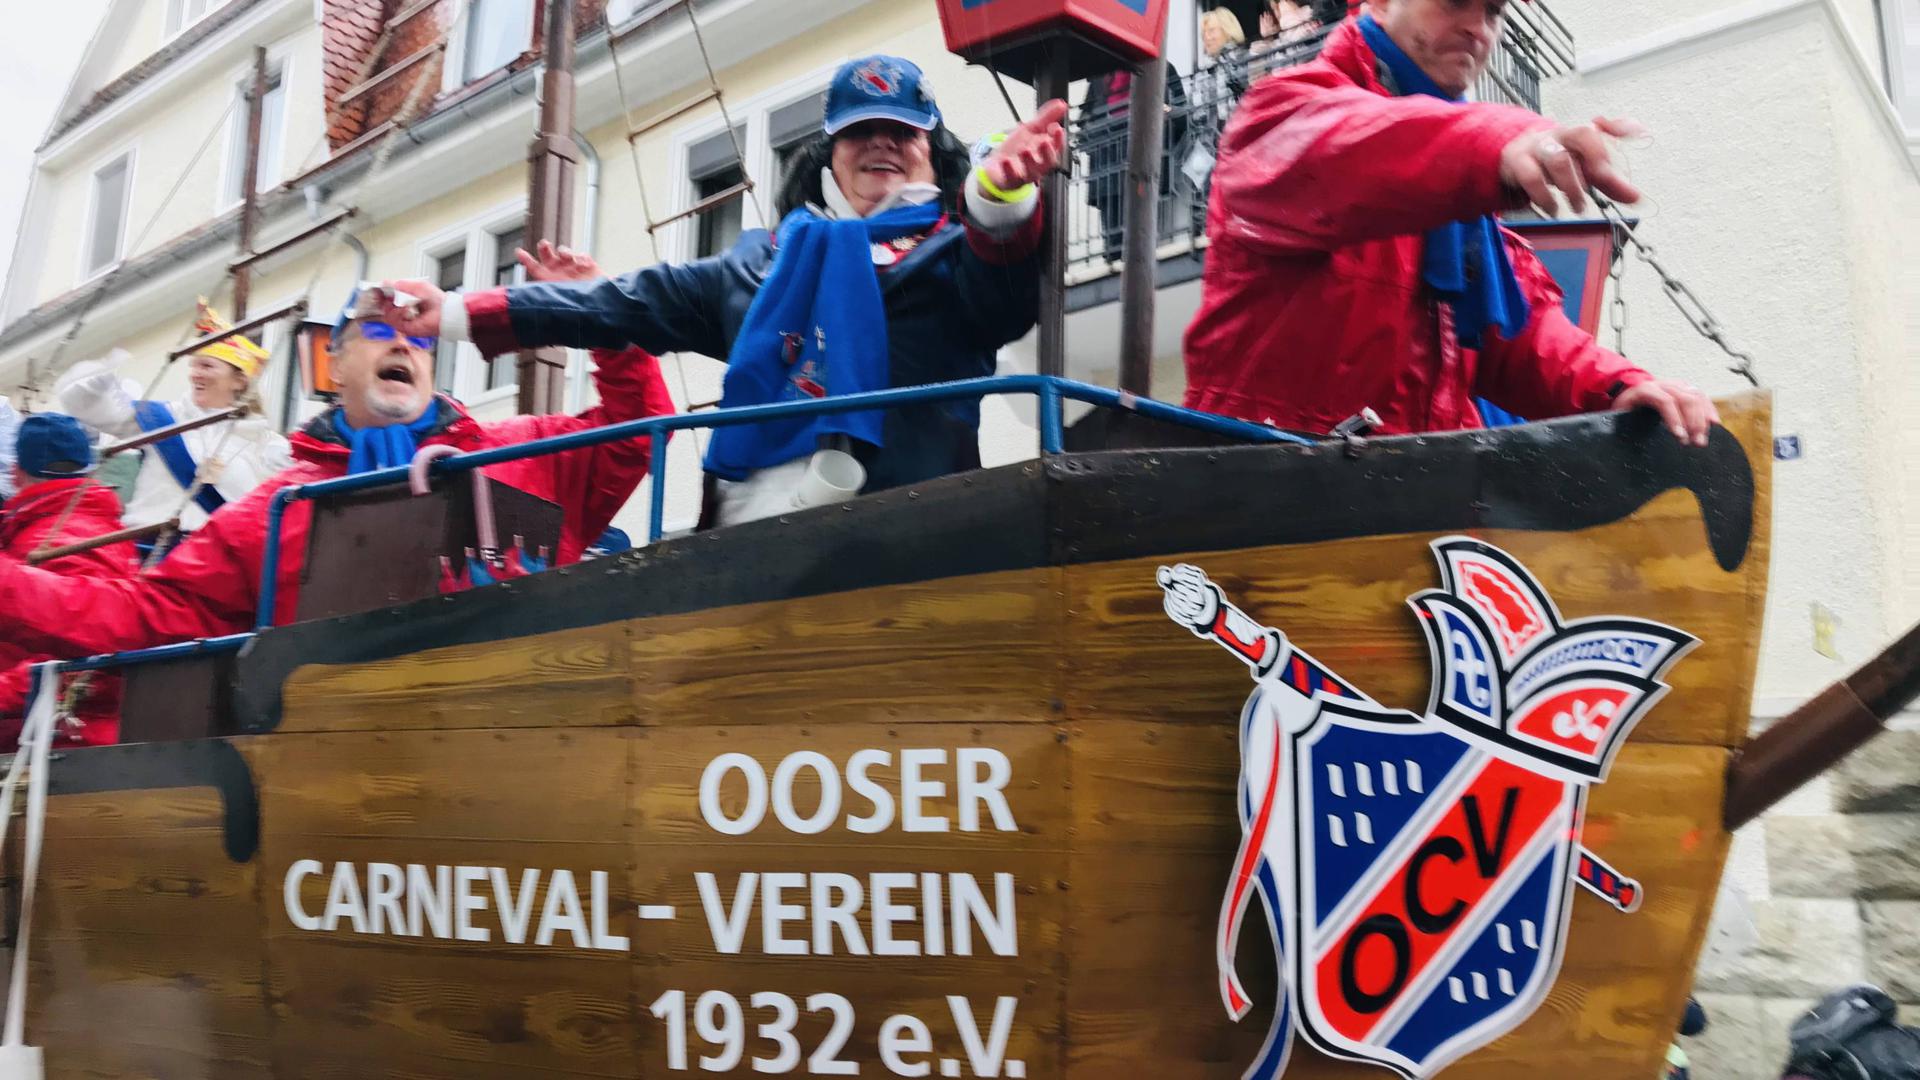 Fällt in diesem Jahr aus: Der Ooser Carneval-Verein hat den für diesen Dienstag geplanten Umzug in Baden-Oos kurzfristig abgesagt.